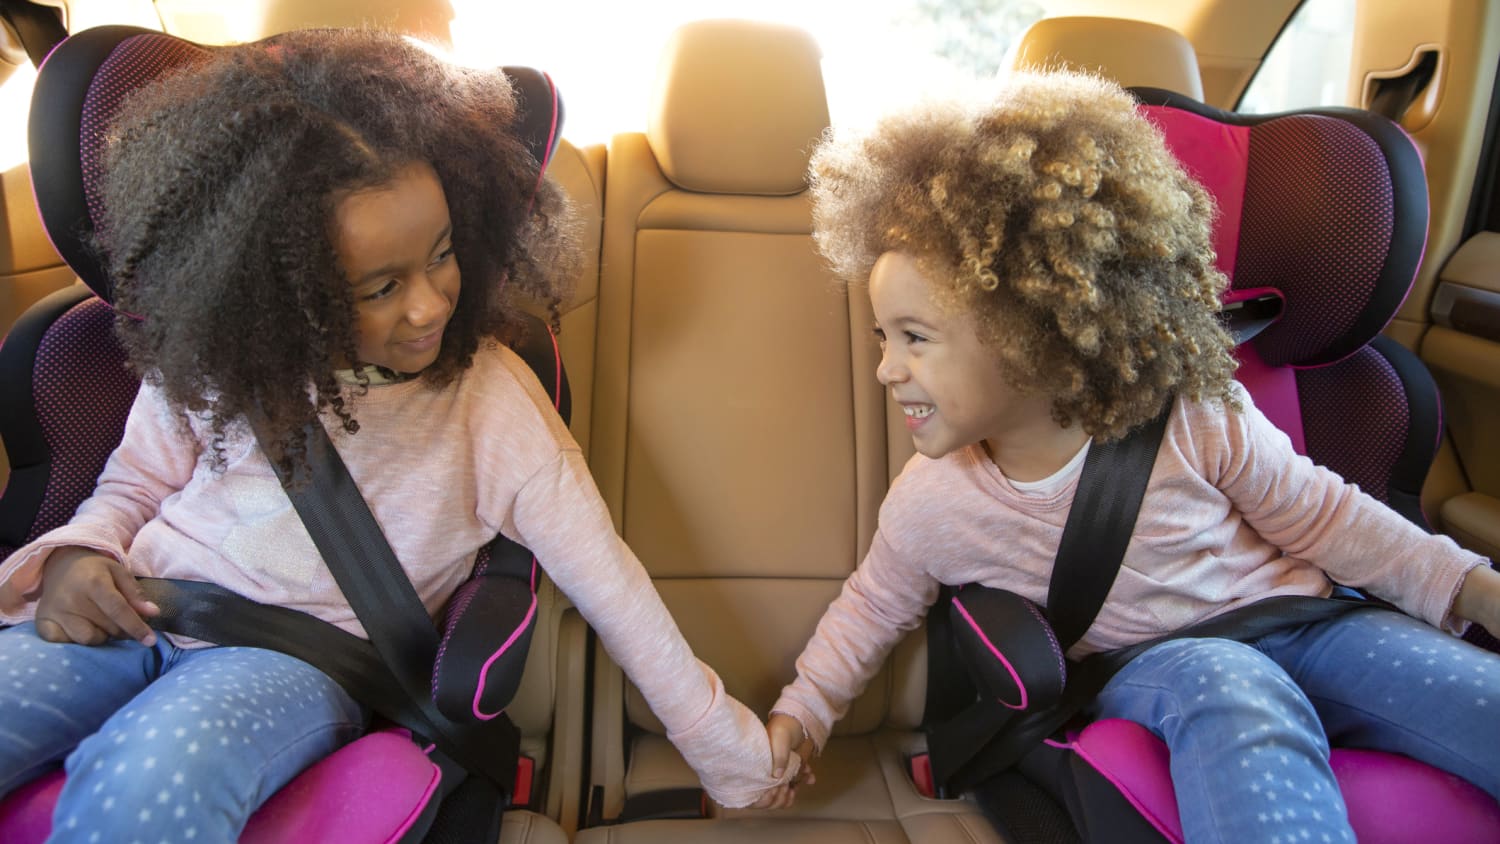 Sitzerhöhung für Kinder im Auto: Bis wann ist sie nötig?